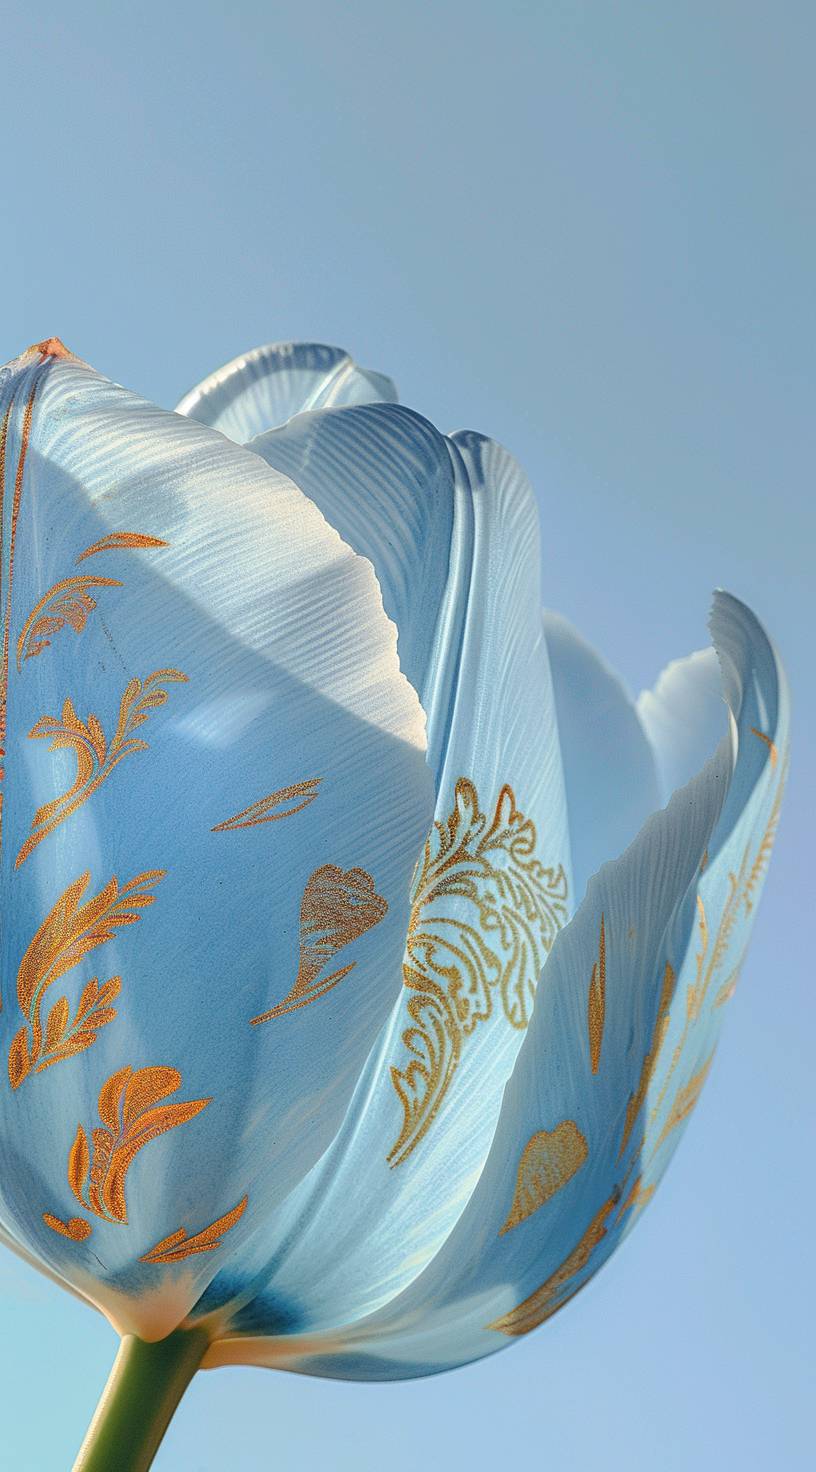 青い空の背景に対して、金の刺繍模様入りの青いチューリップの花びらが下から撮影されました。この写真はキヤノンeos r5のスタイルで撮影され、クローズアップされた視点があります。細部にこだわった高品質の画像です。